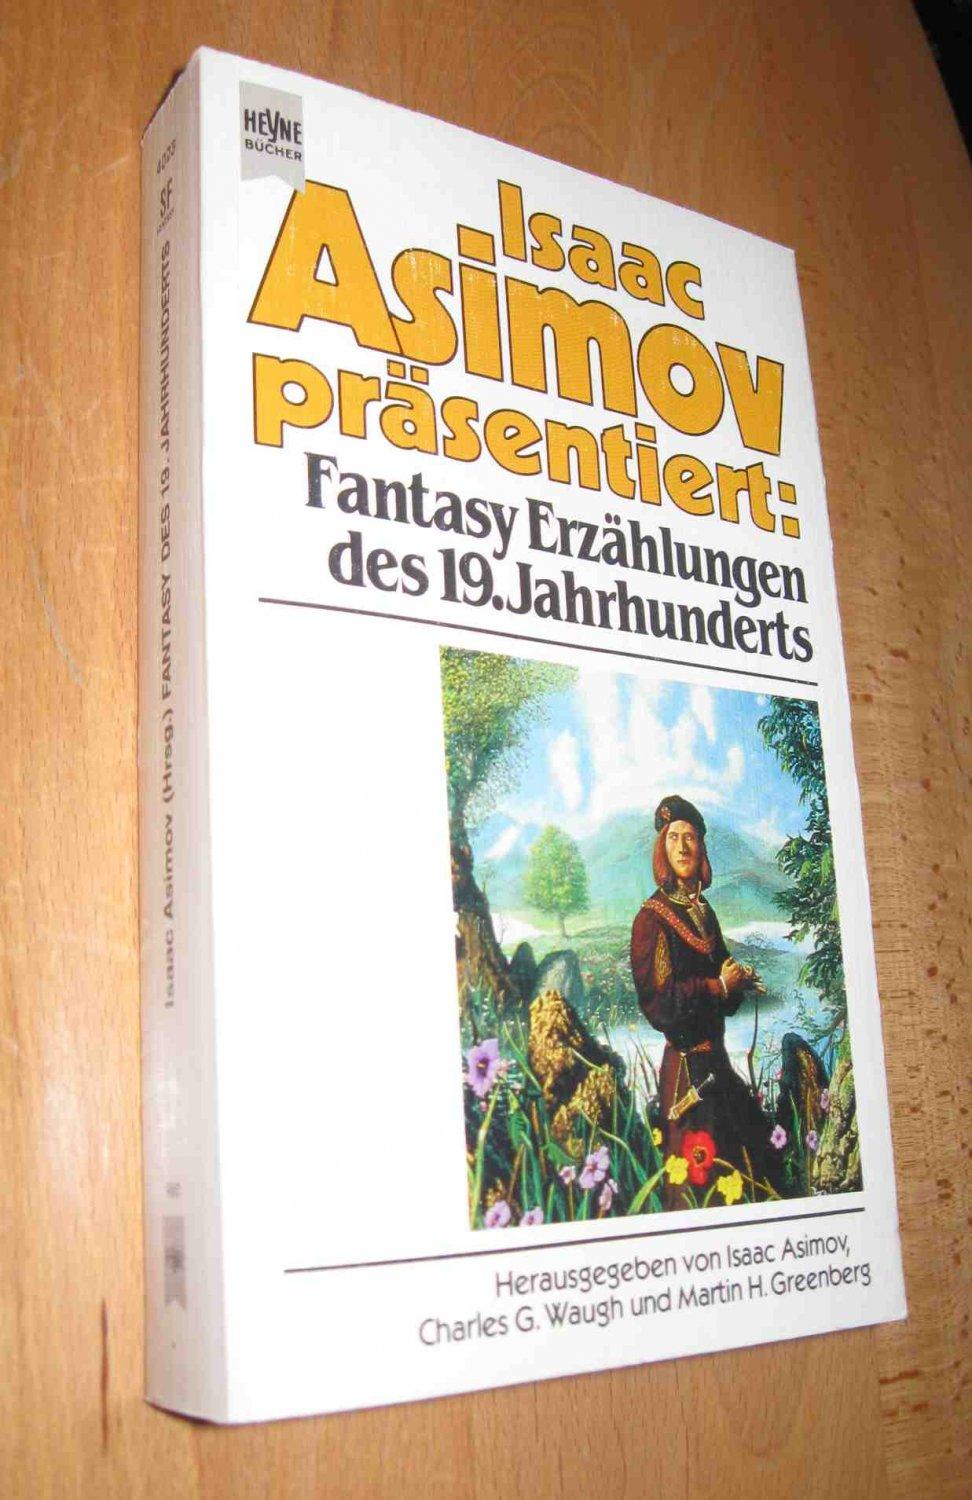 Isaac Asimov präsentiert: Fantasy Erzählungen des 19. Jahrhunderts - Asimov, Isaac( Hrsg.)